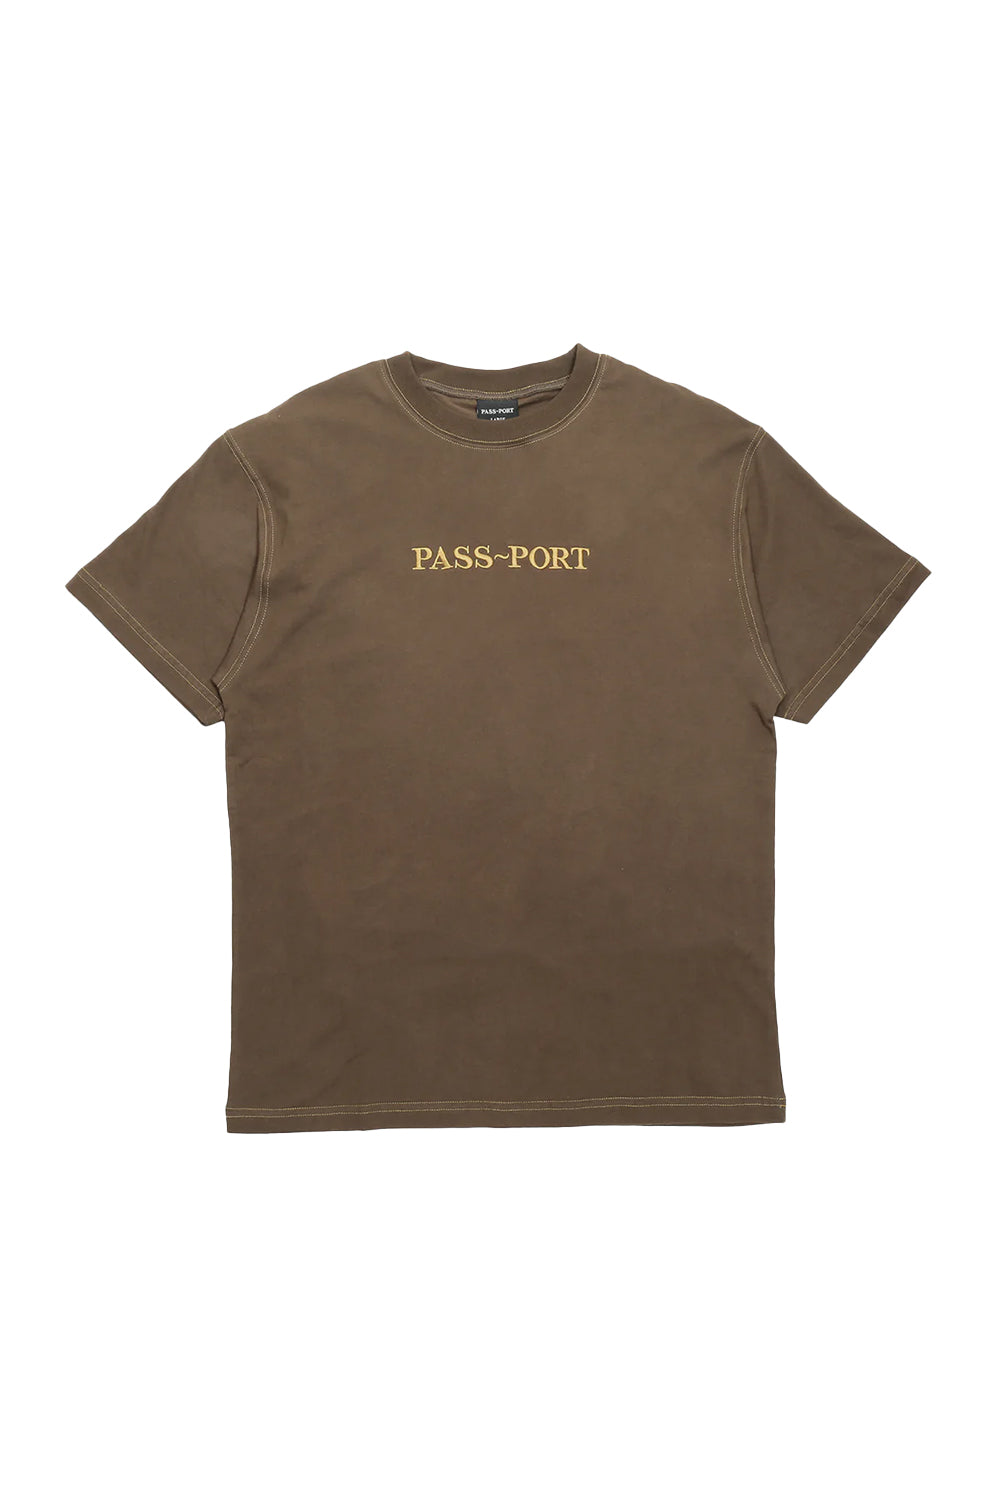 Passport Mens Official Organic T-Shirt